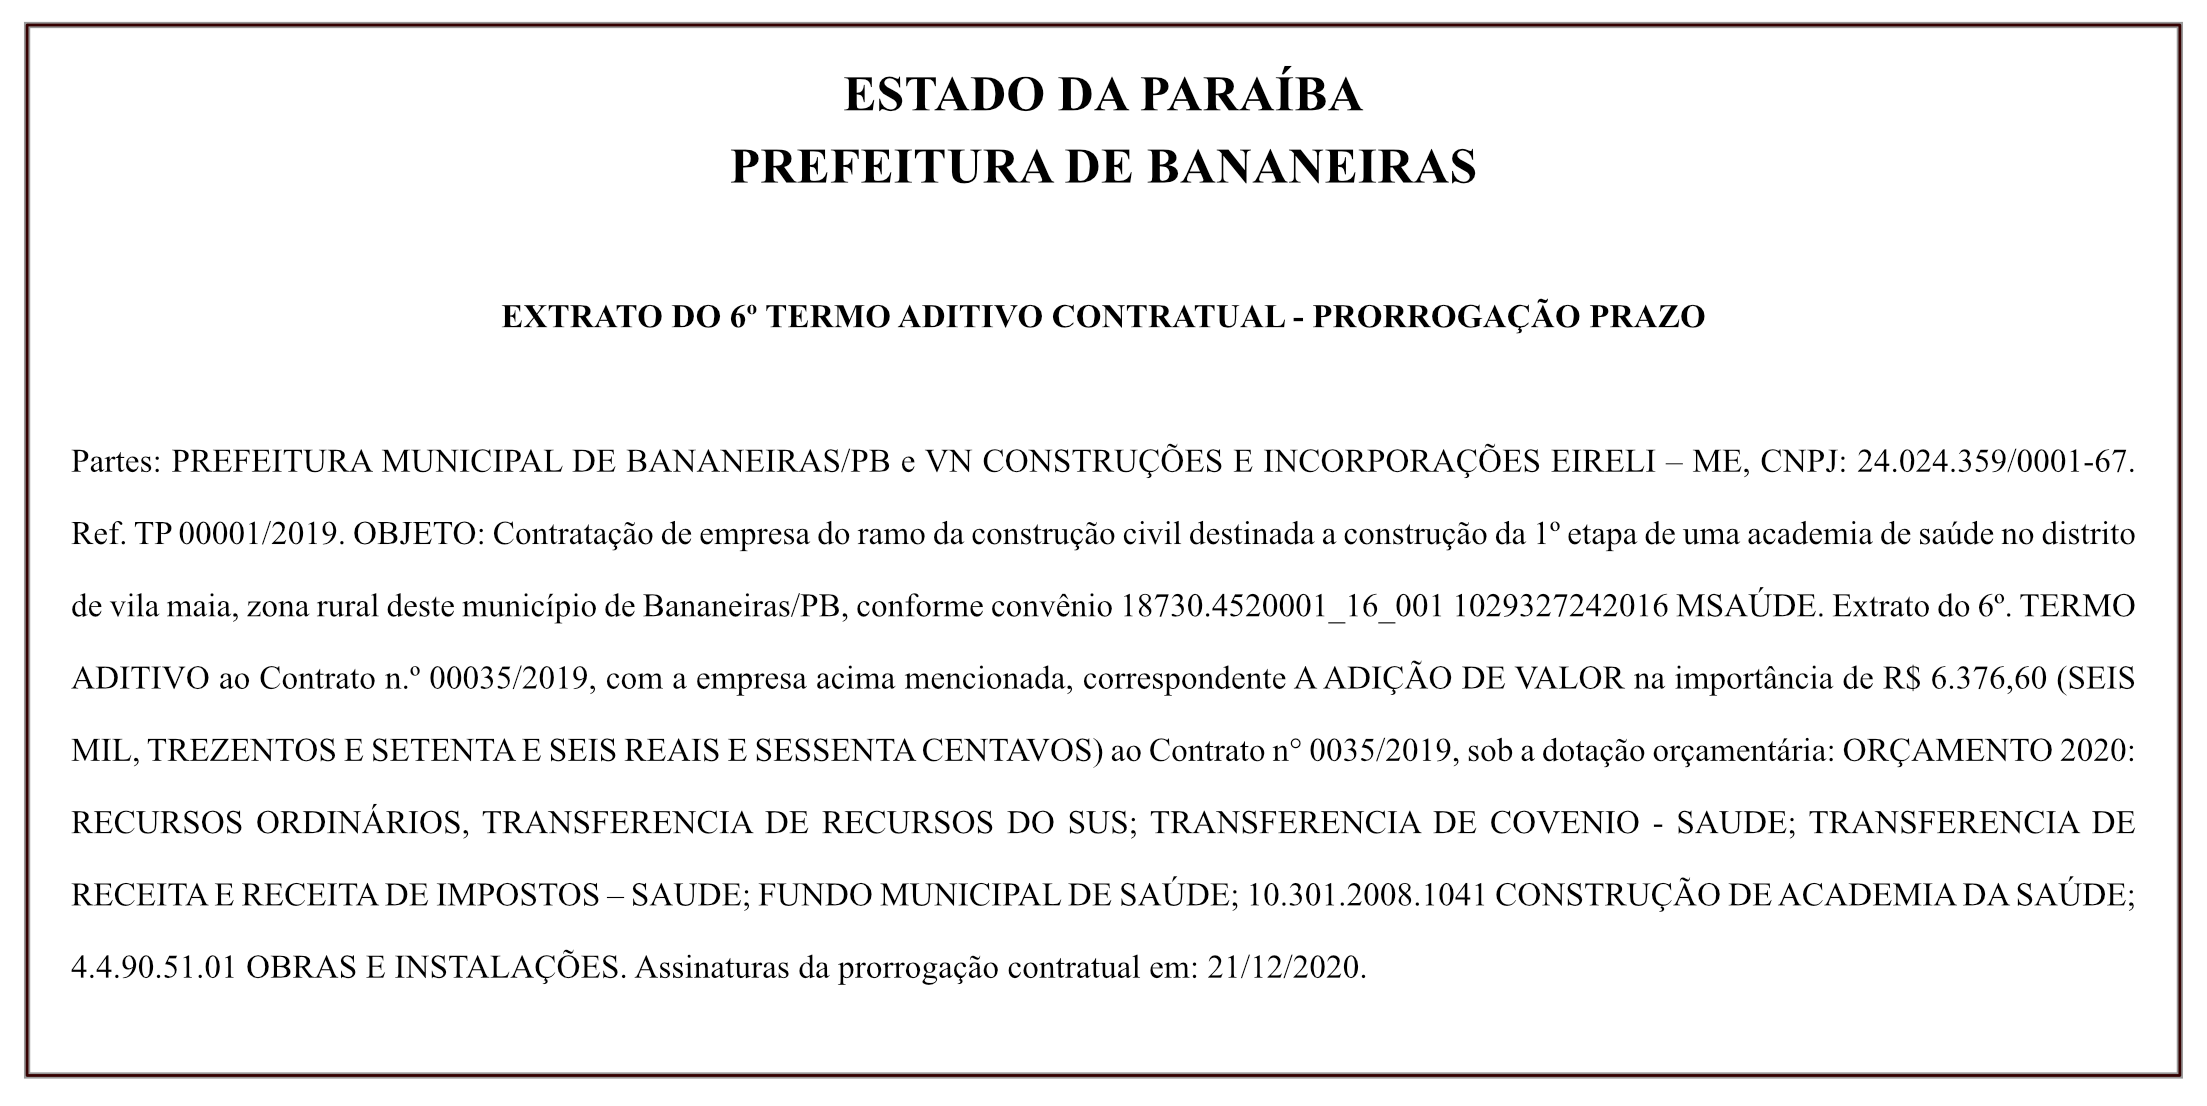 PREFEITURA DE BANANEIRAS- EXTRATO DO 6º TERMO ADITIVO CONTRATUAL – PRORROGAÇÃO PRAZO